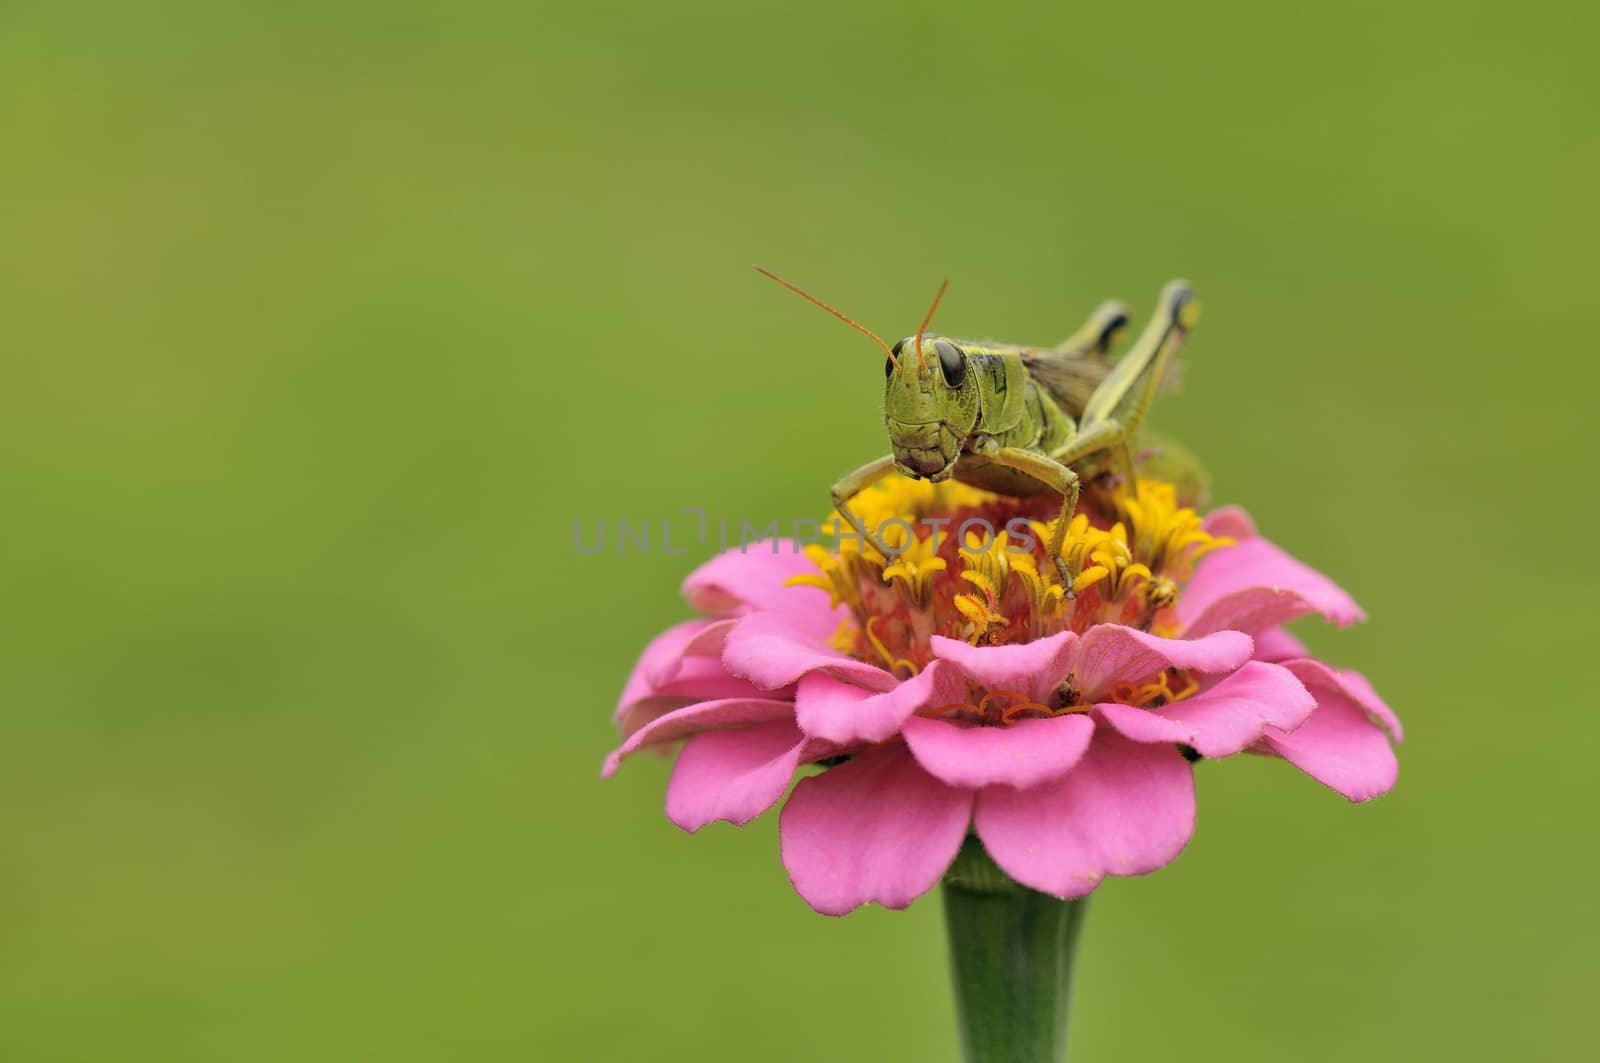 grasshopper by Hbak